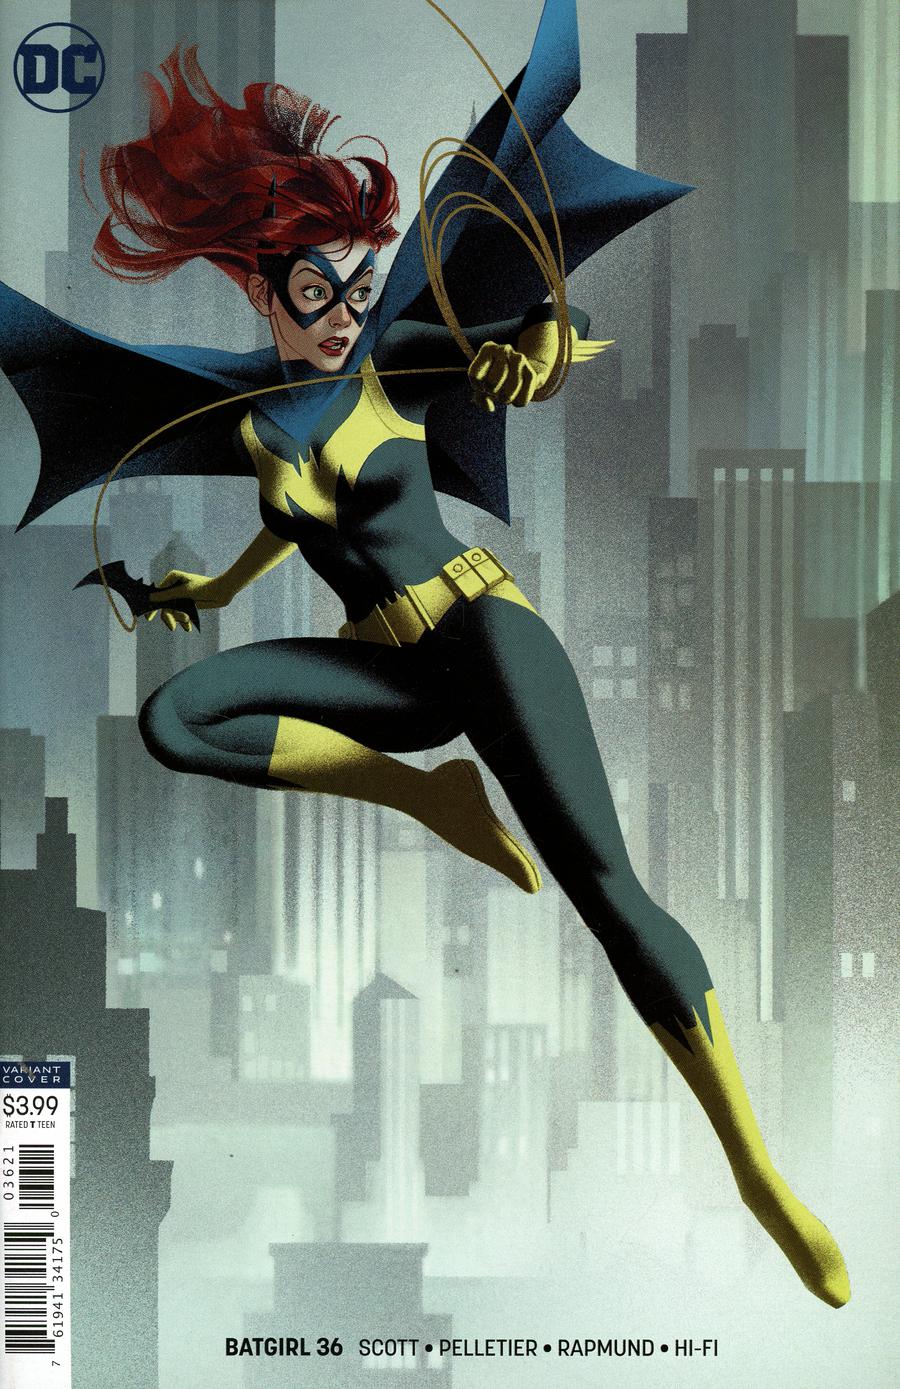 Batgirl Vol 5 #25 Cover B Variant Joshua Middleton Cover